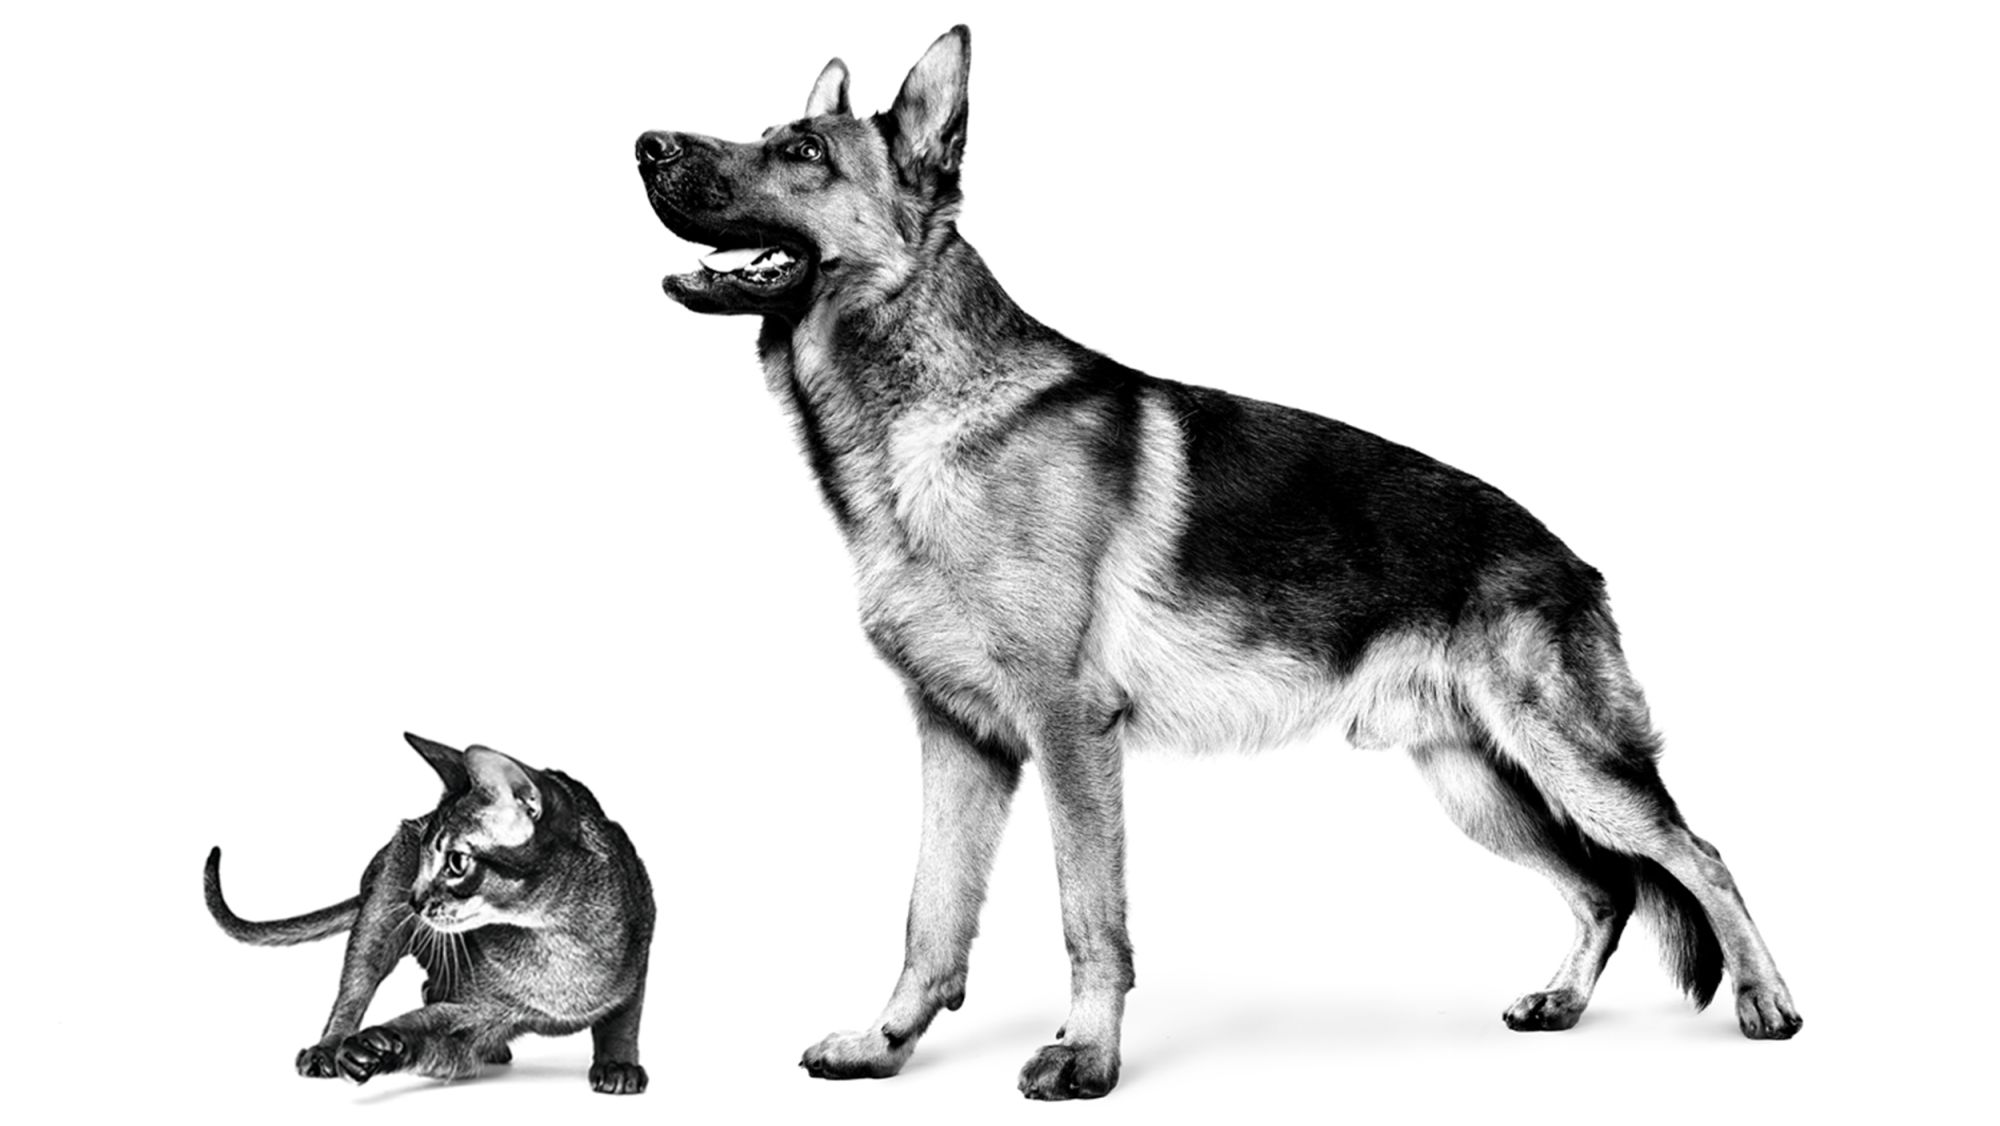 Erwachsener Deutscher Schäferhund und Abessinierkatze, die in Schwarzweiß vor weißem Hintergrund stehen